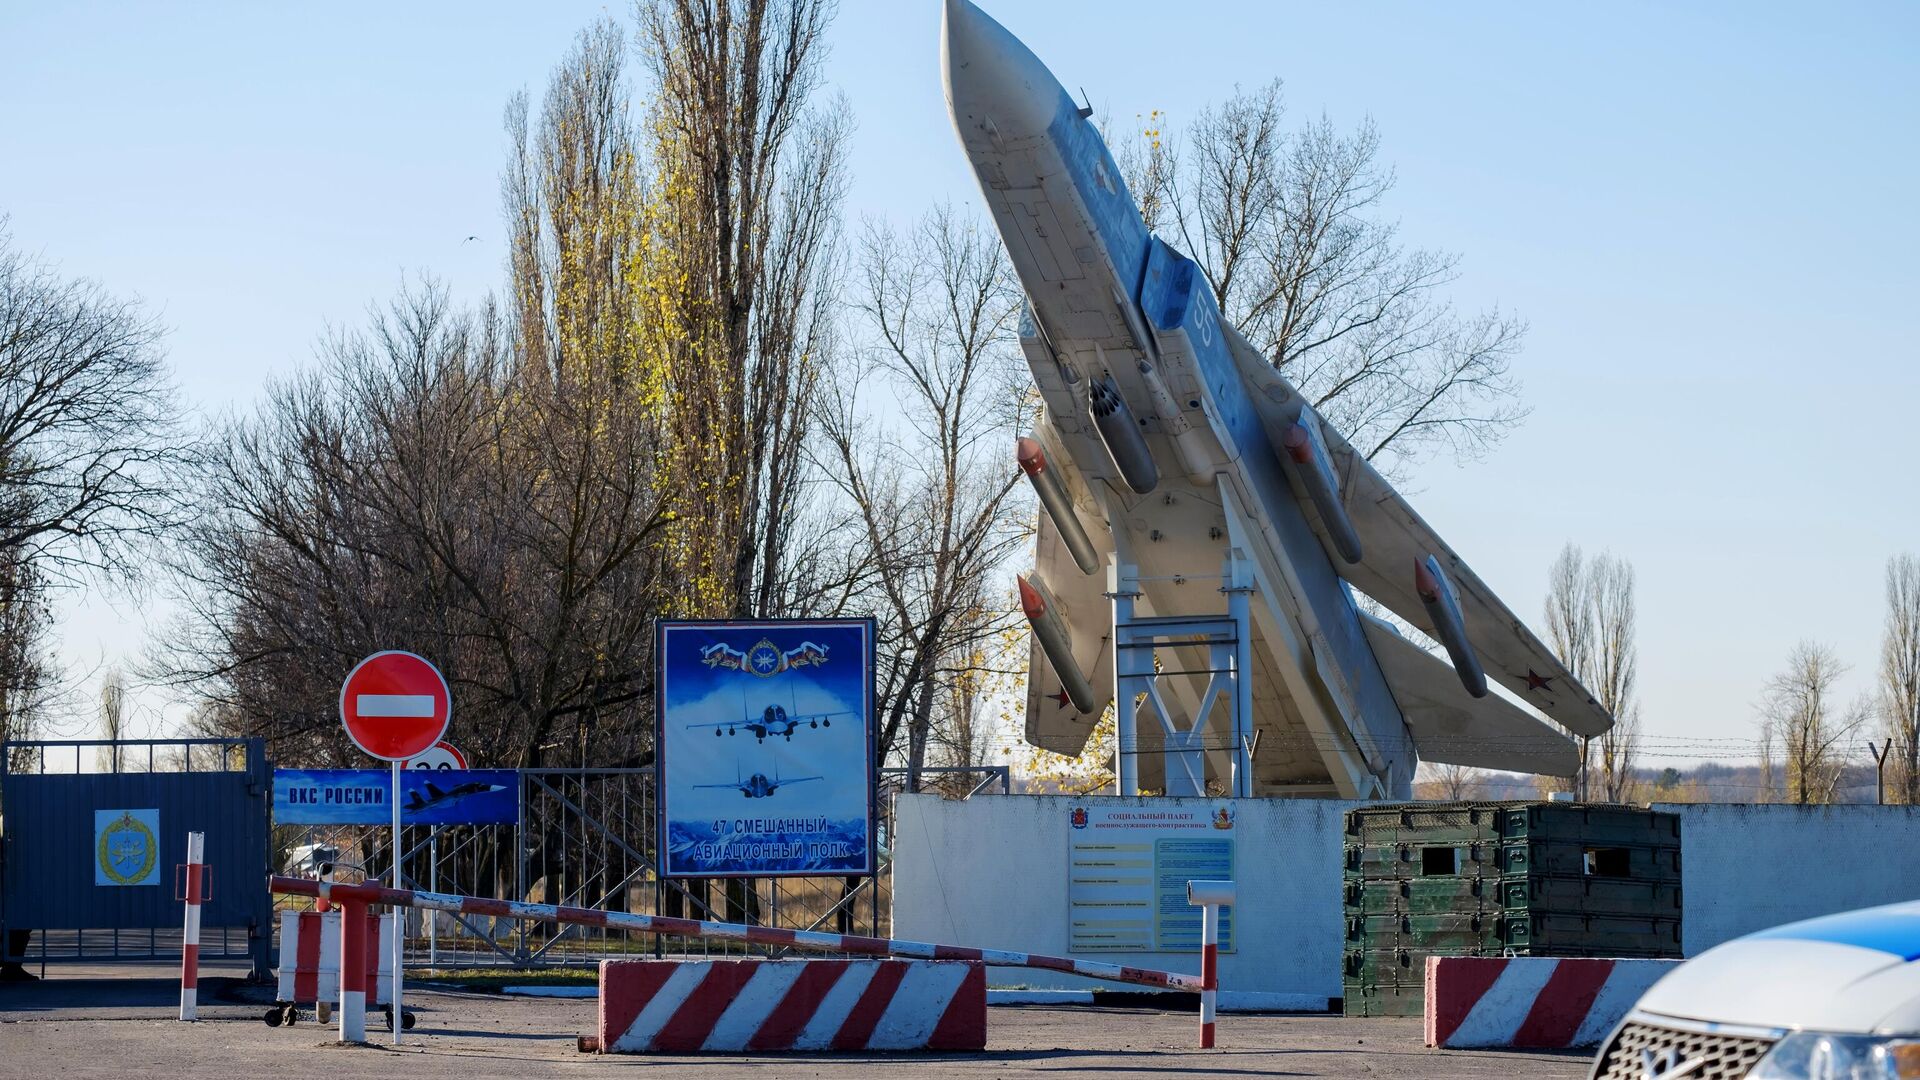 Обстановка у аэродрома в Воронеже, где произошло нападение, спокойная